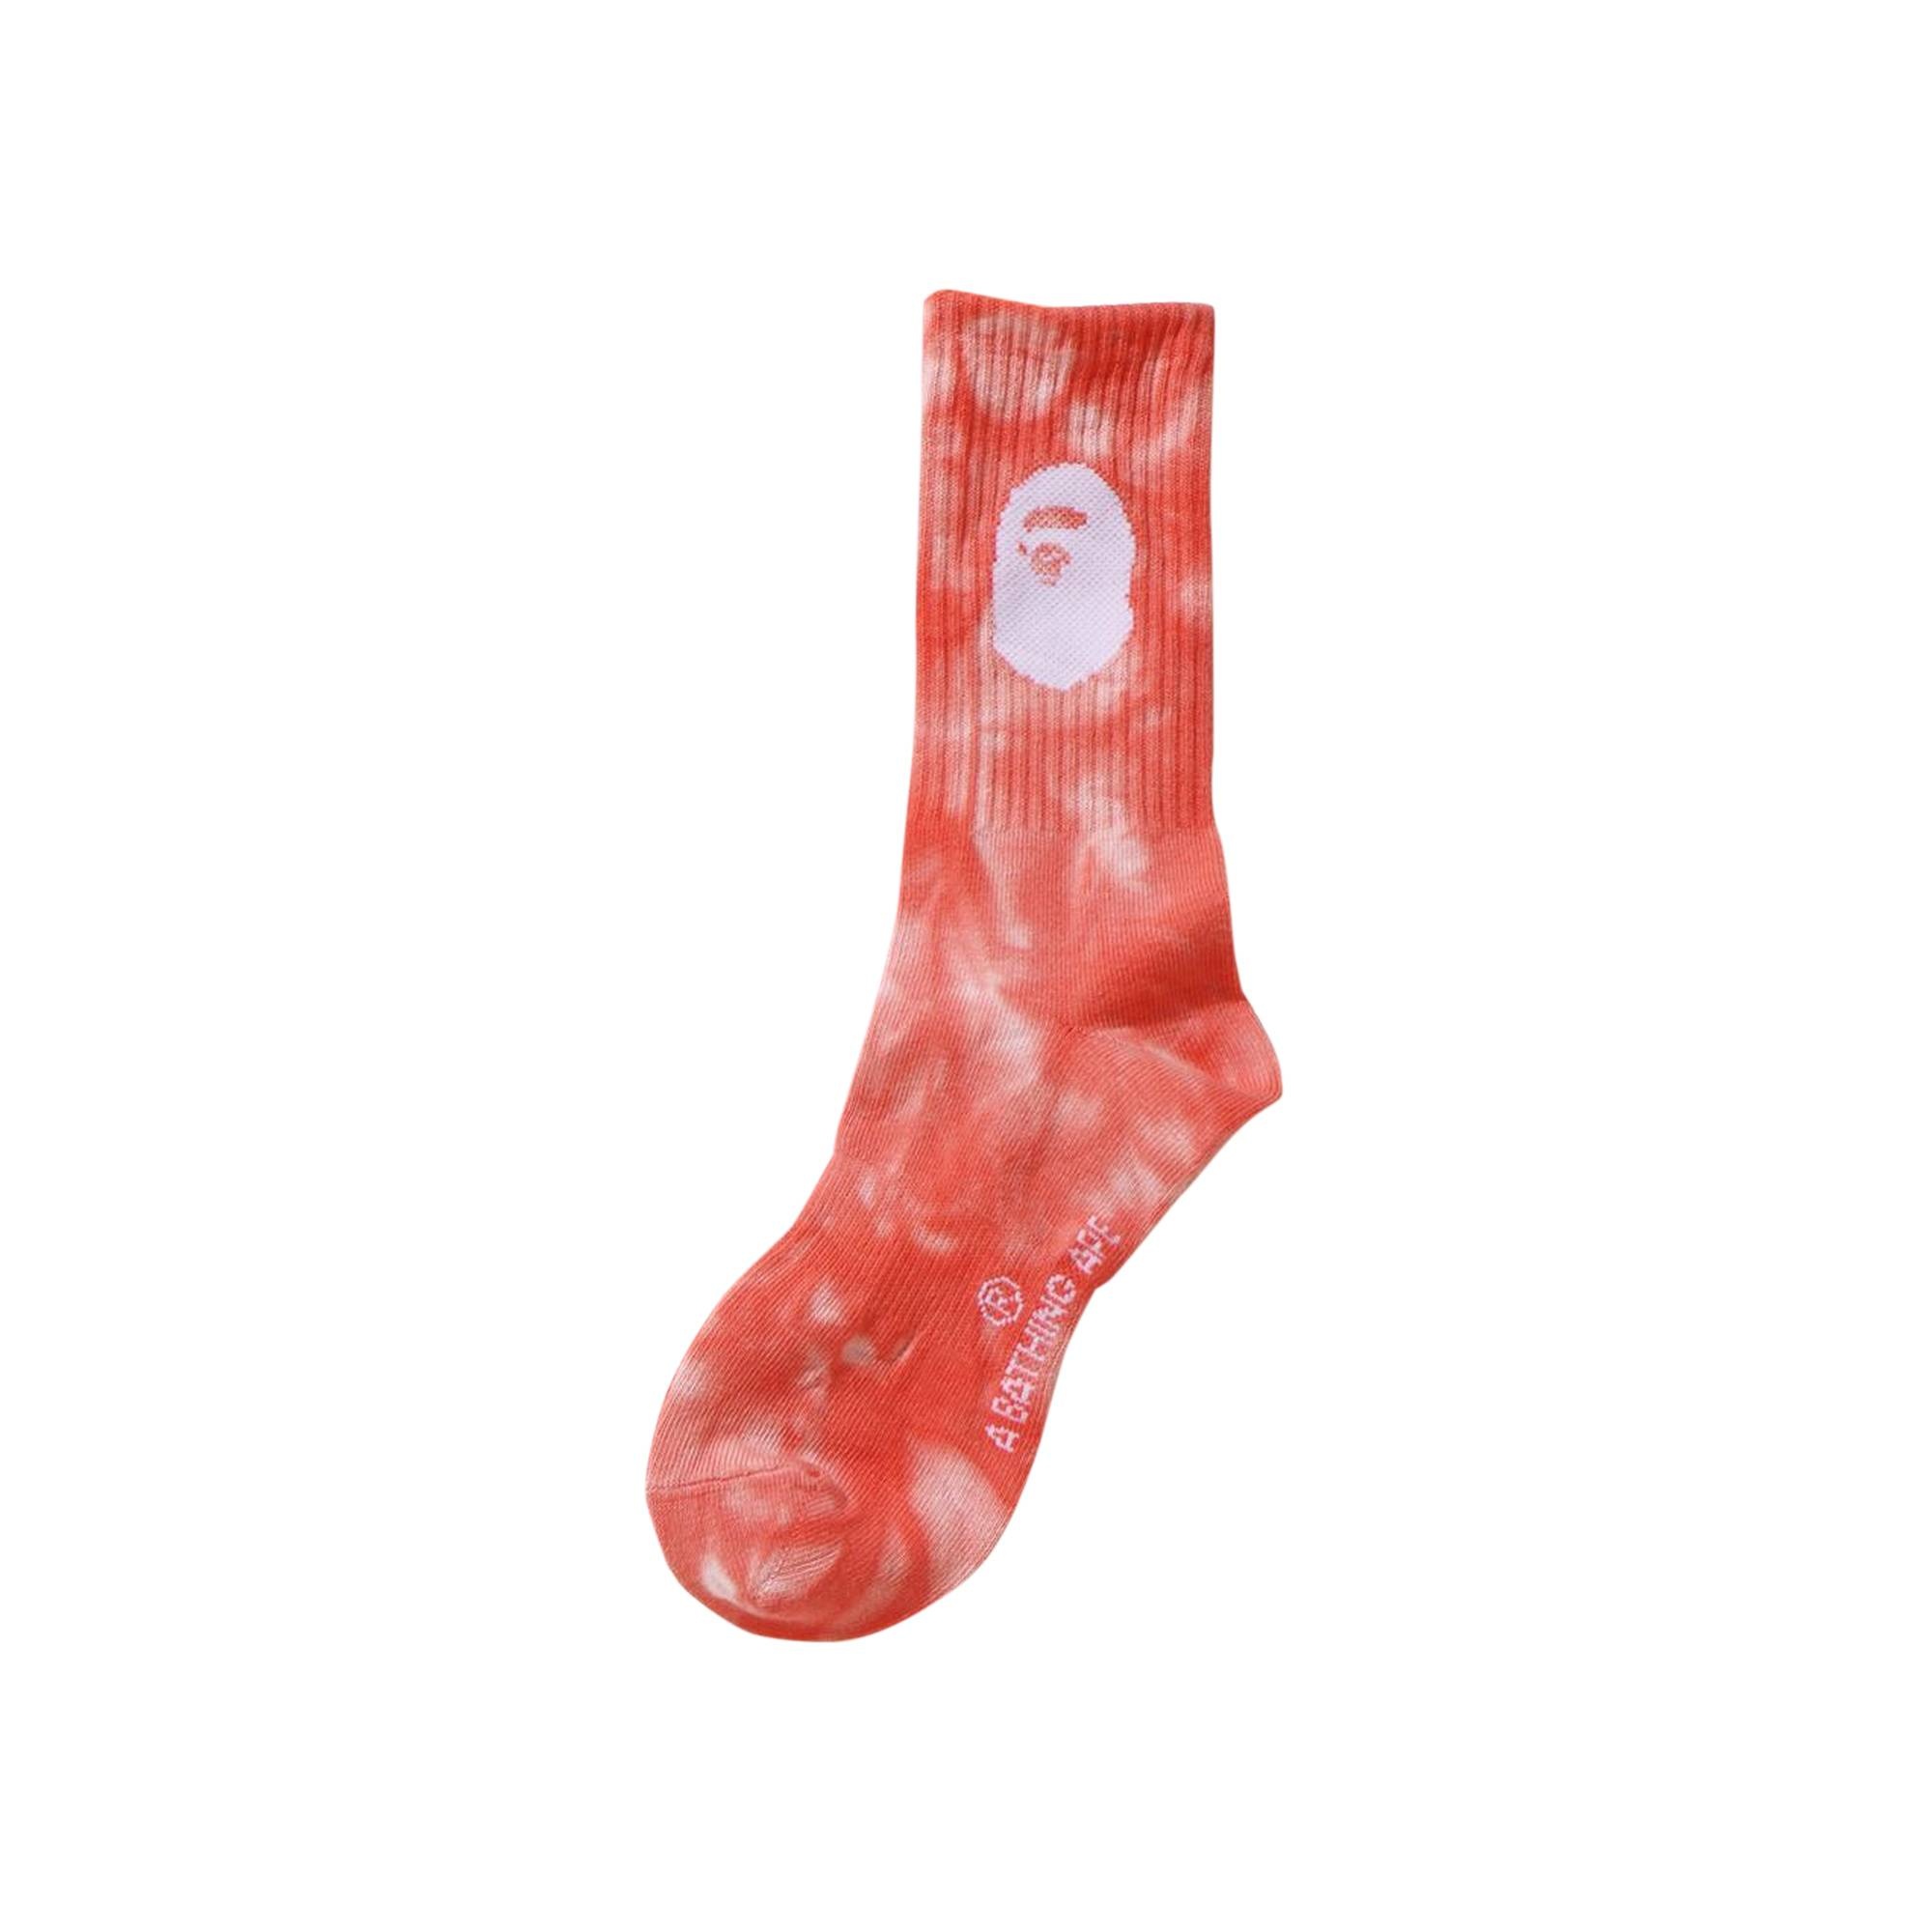 BAPE Ape Head Tie Dye Socks 'Red' - 1